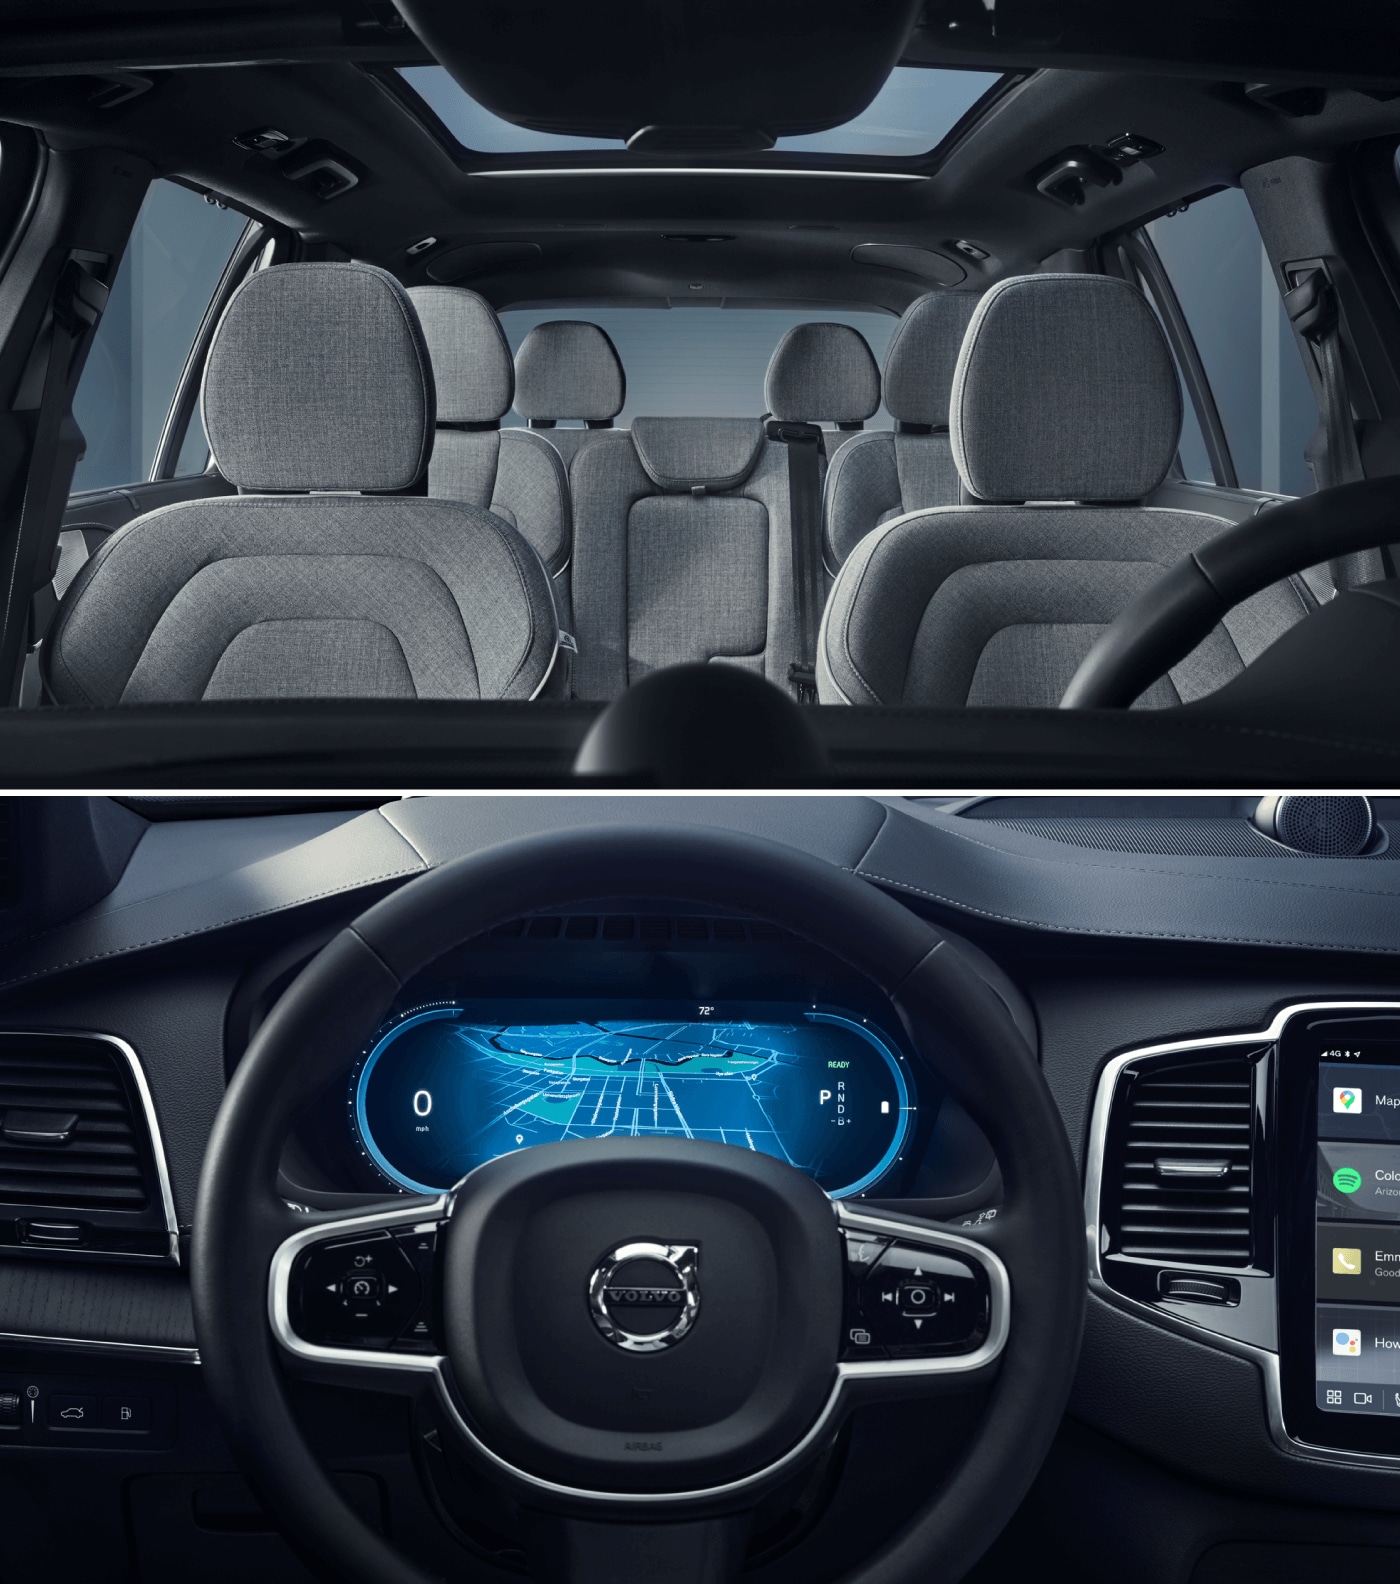 Volvo XC90 vs. Audi Q7 Interior and Technology